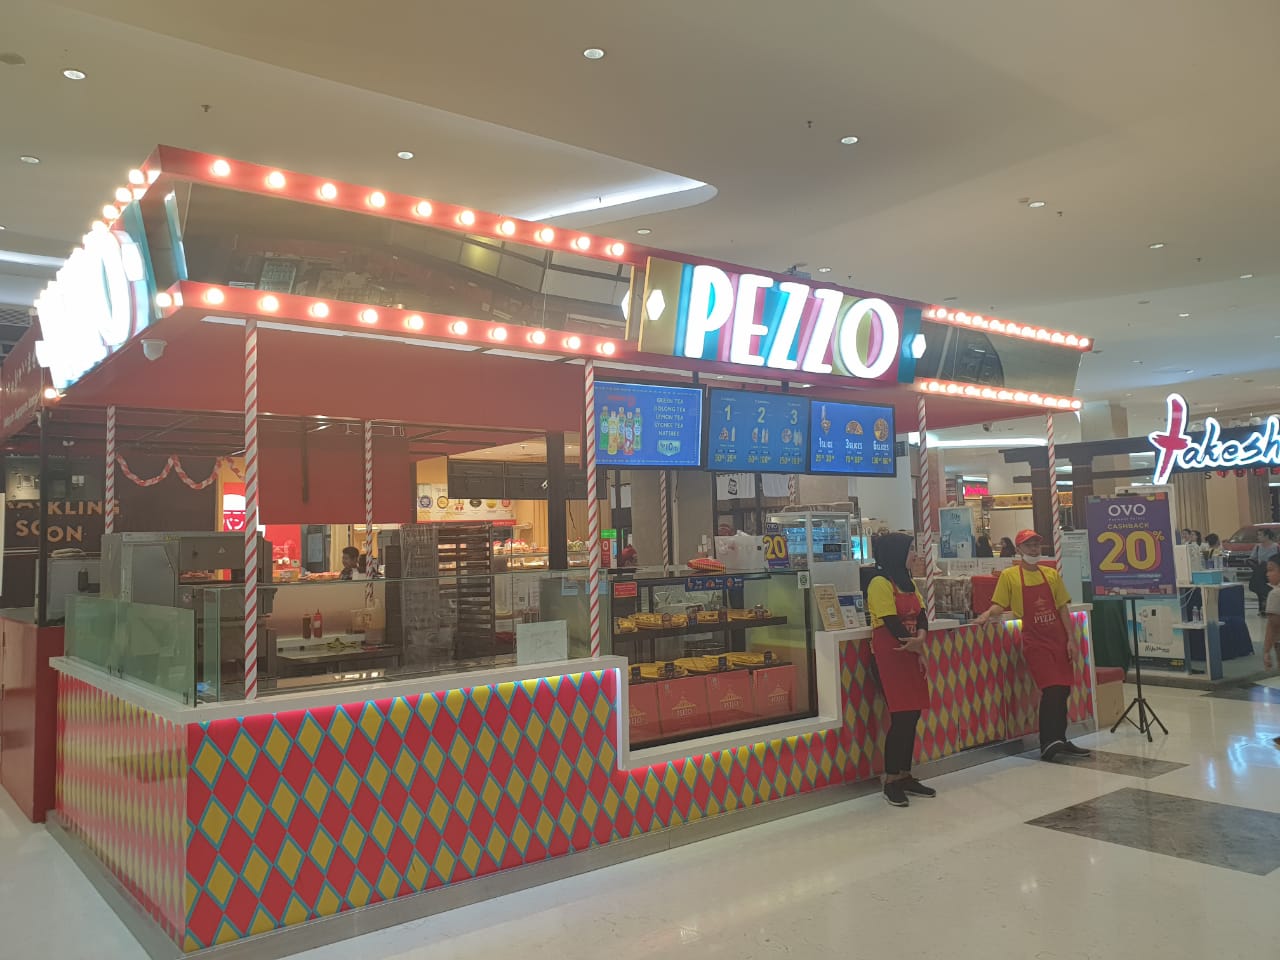 Pizza Pezzo shop front in lippo mall puri st. moritz